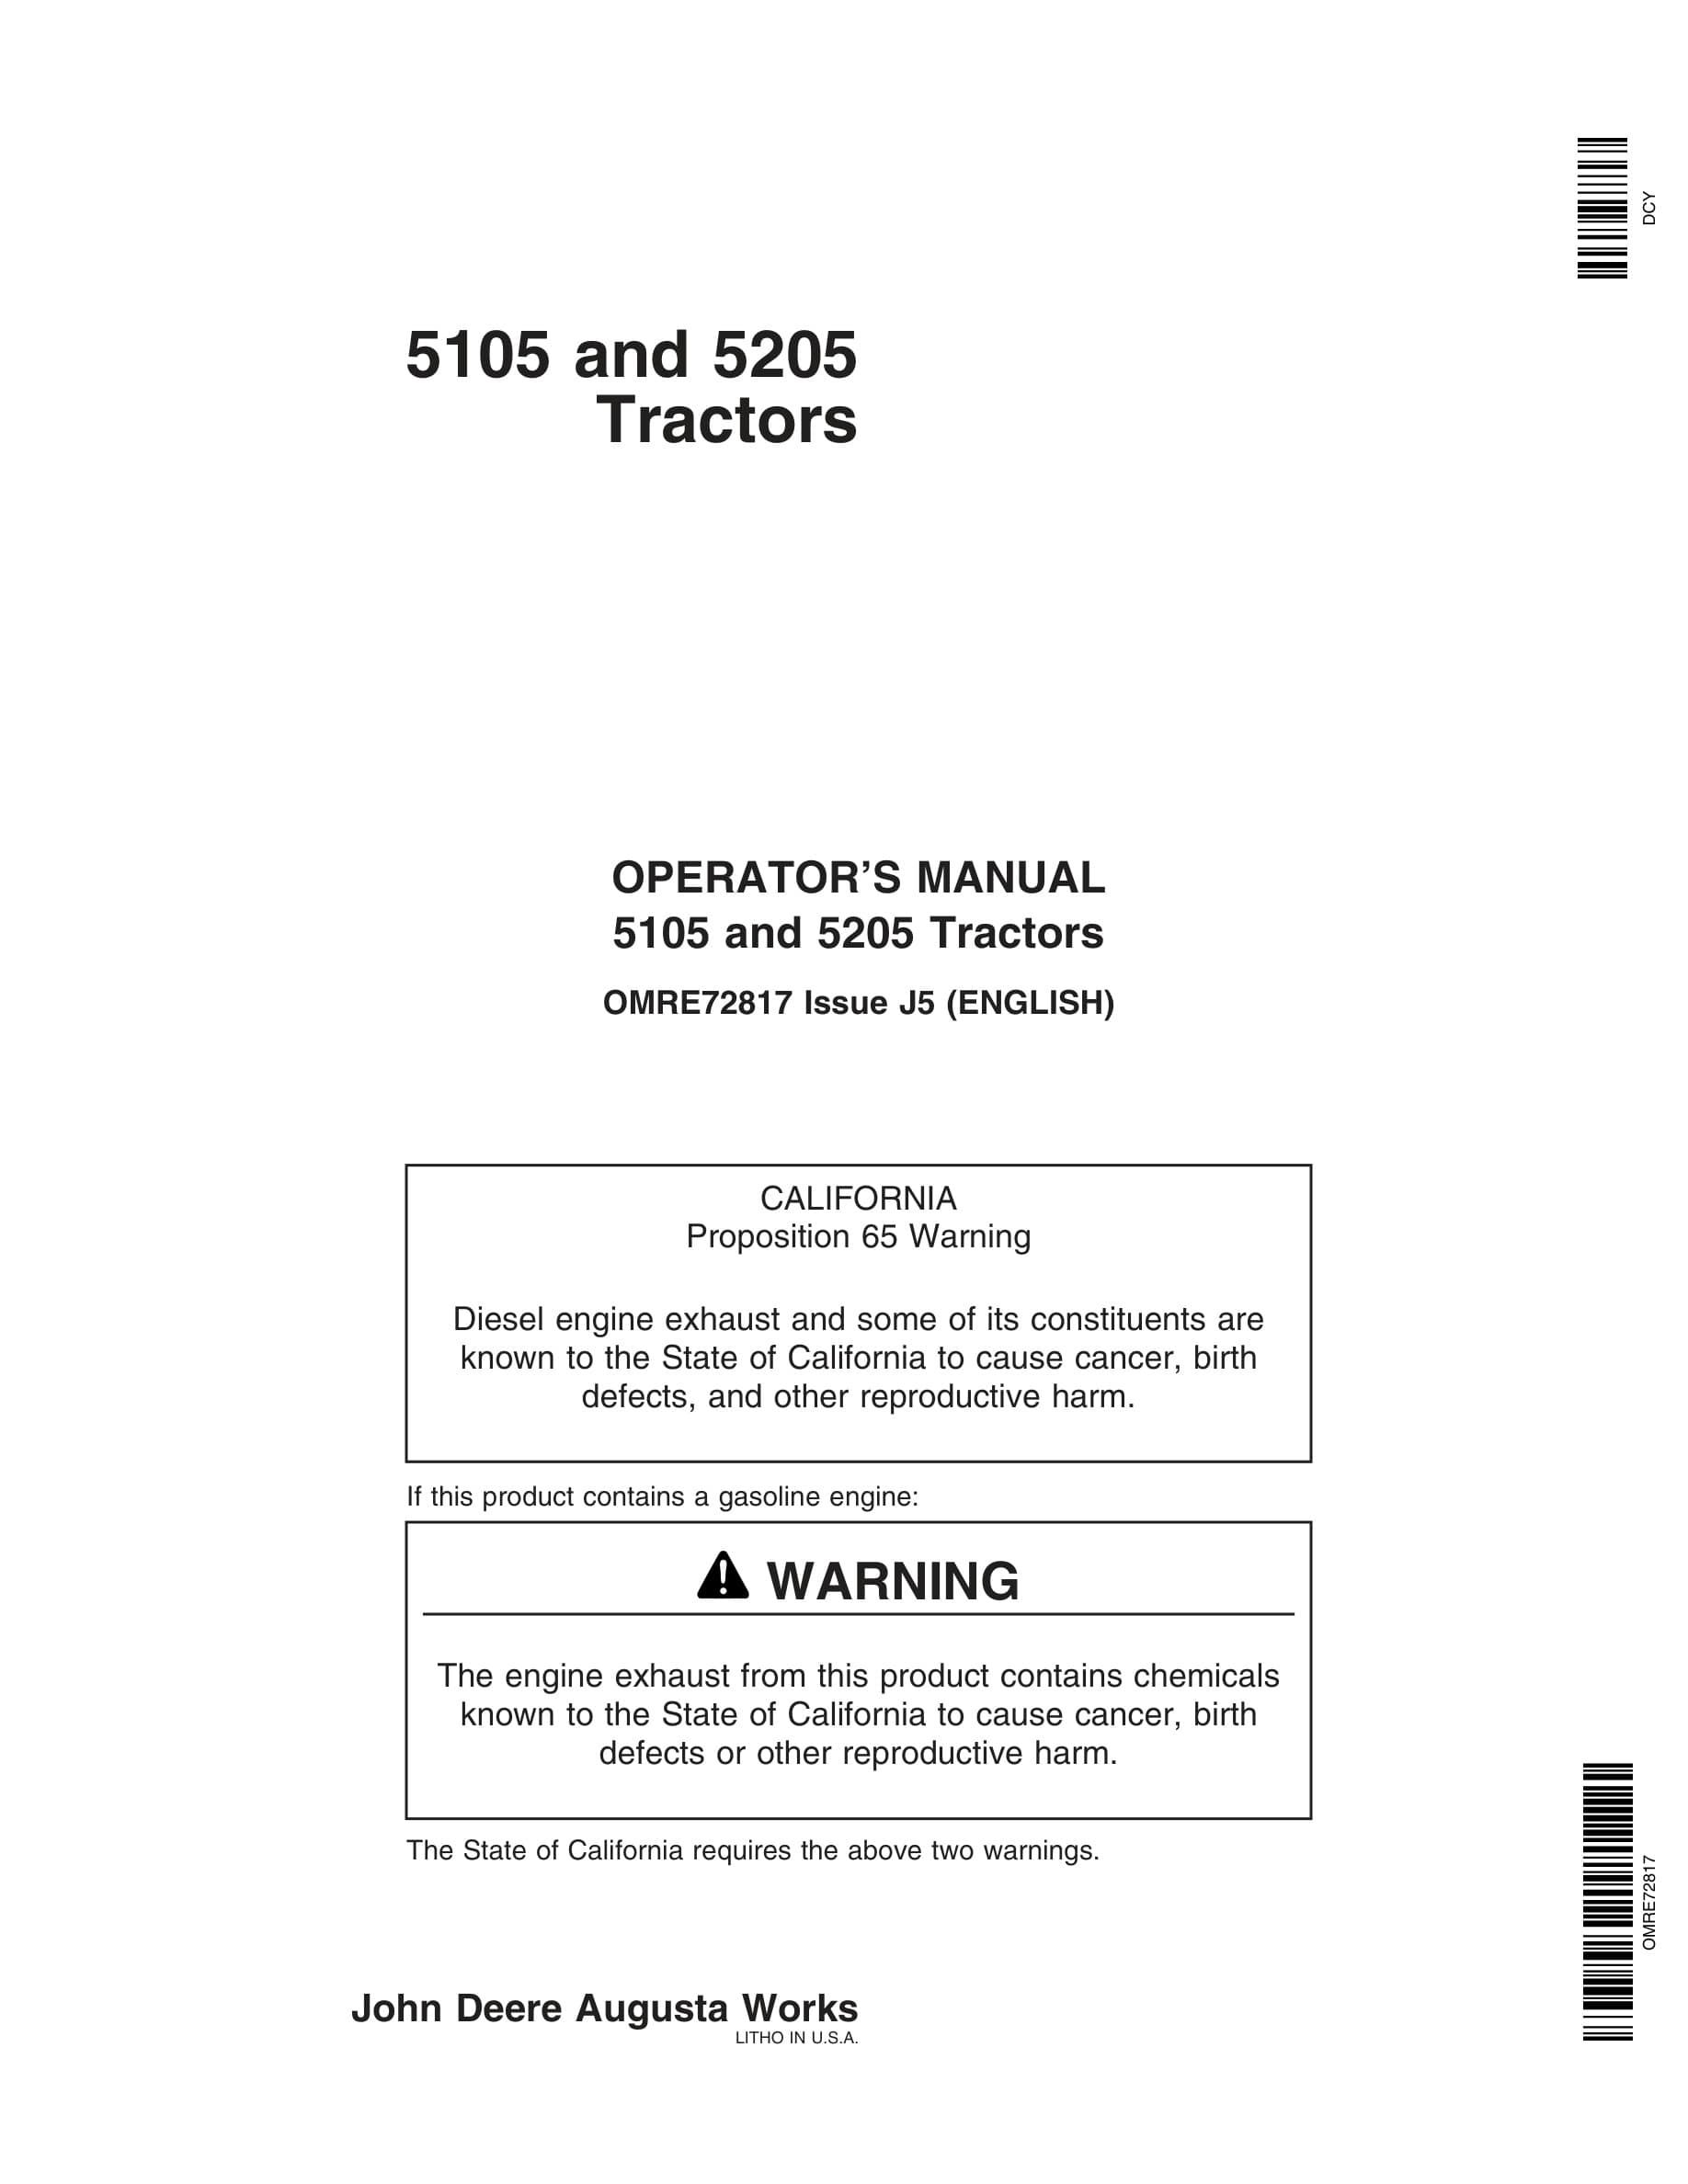 John Deere 5105 and 5205 Tractor Operator Manual OMRE72817-1